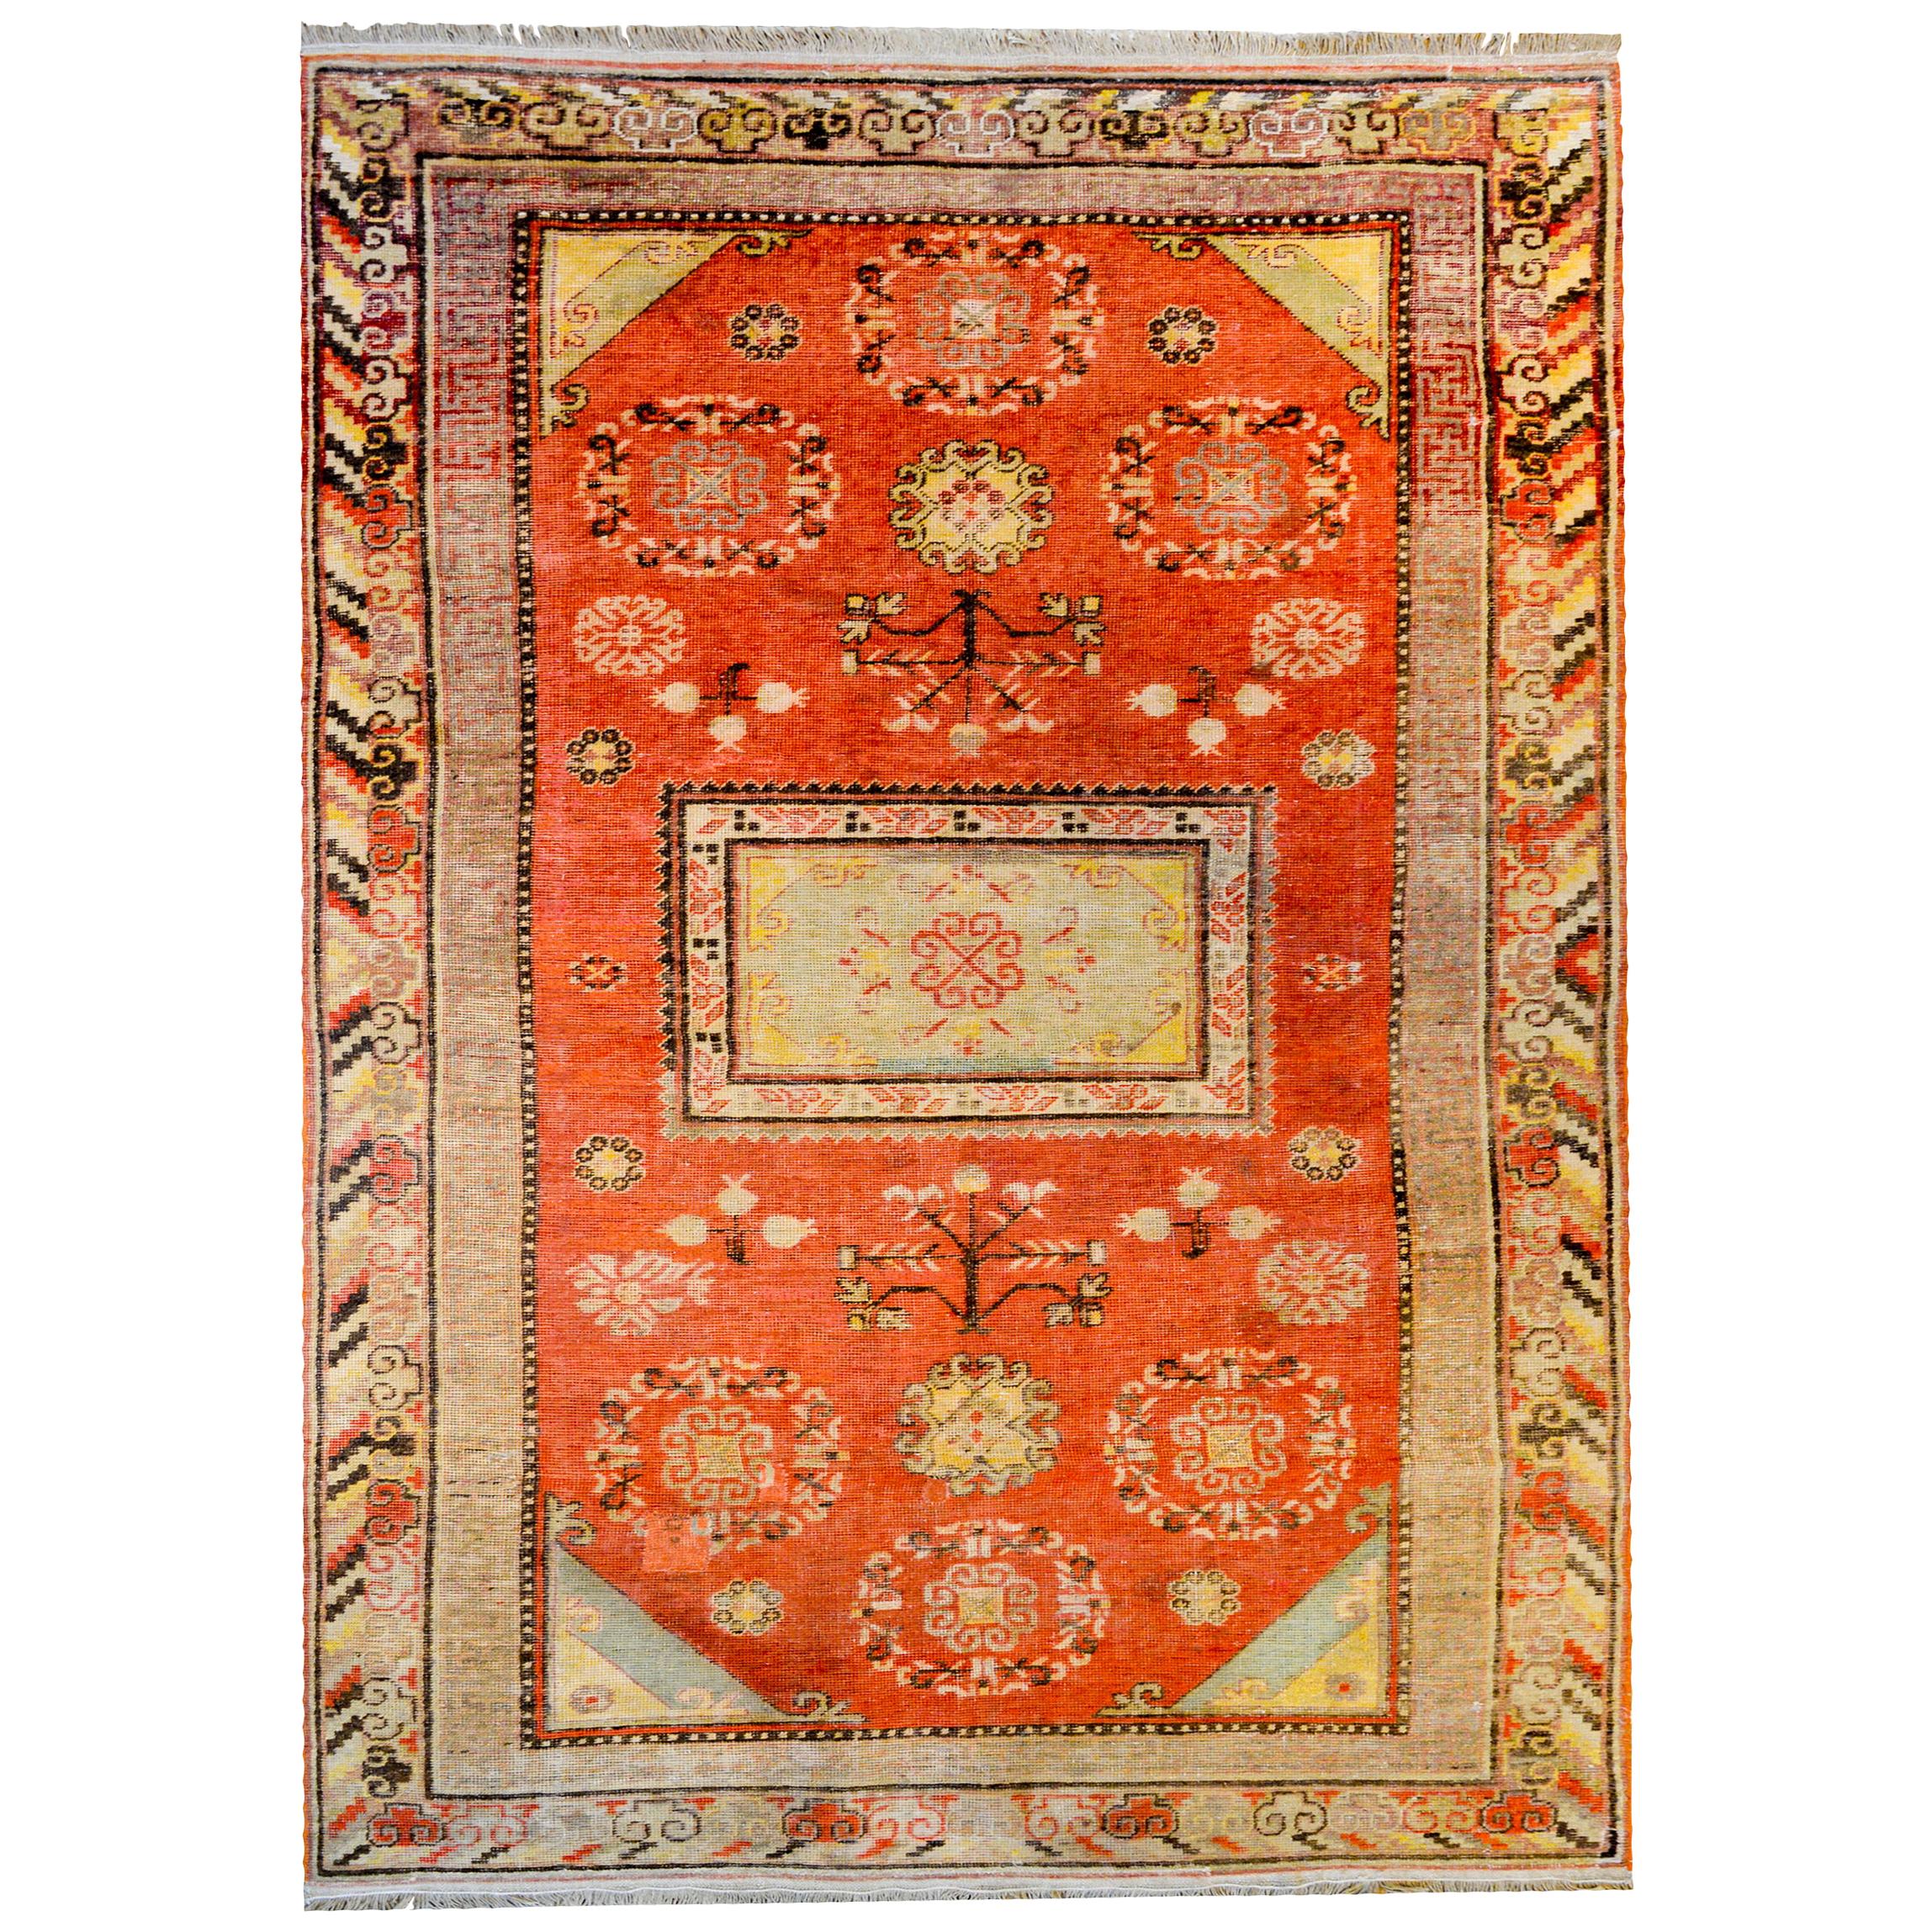 Schöner zentralasiatischer Khotan-Teppich aus dem frühen 20. Jahrhundert